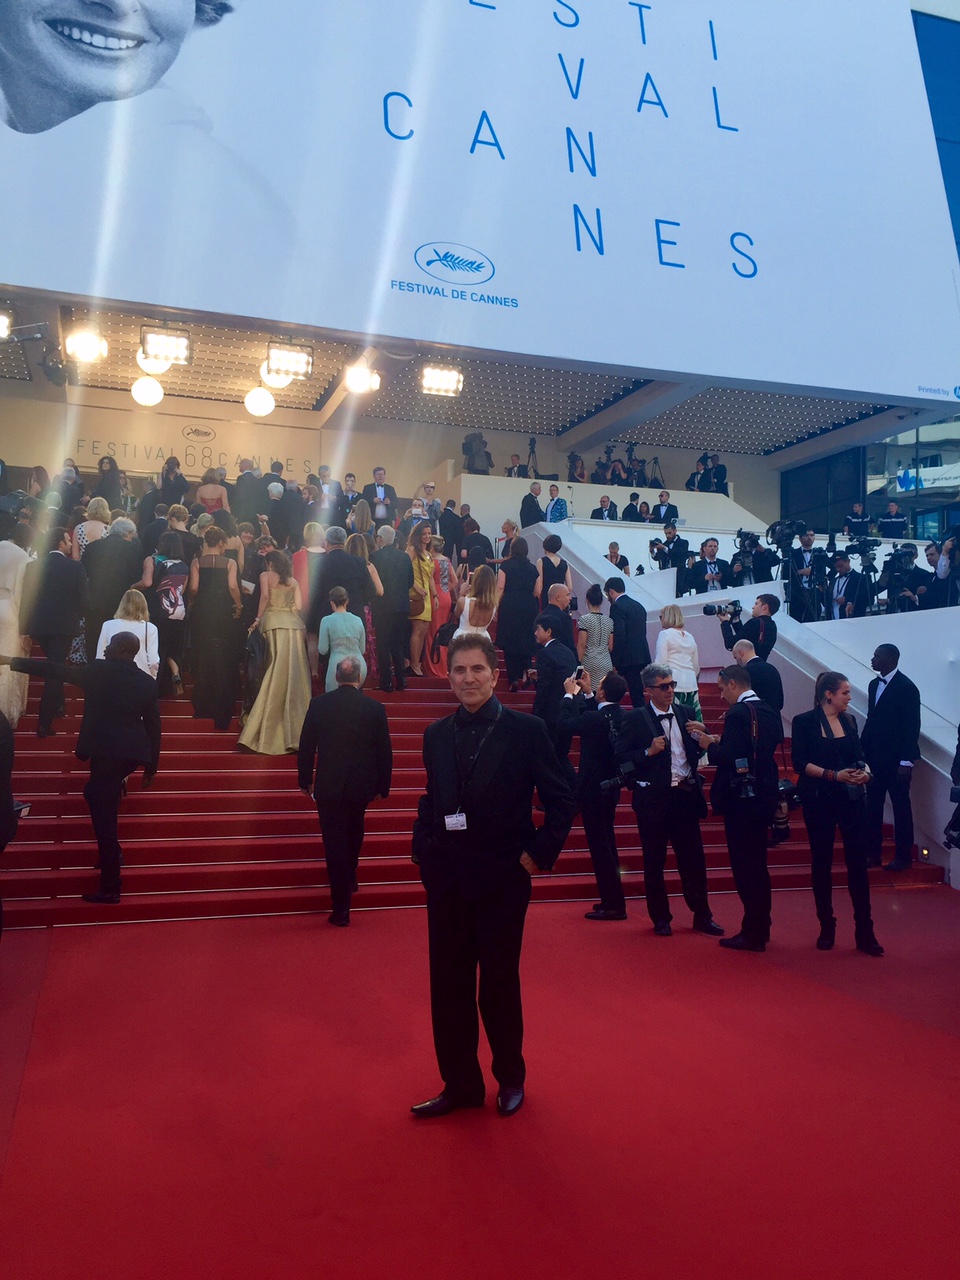 Cannes Film Festival 2015 J.J. Alani